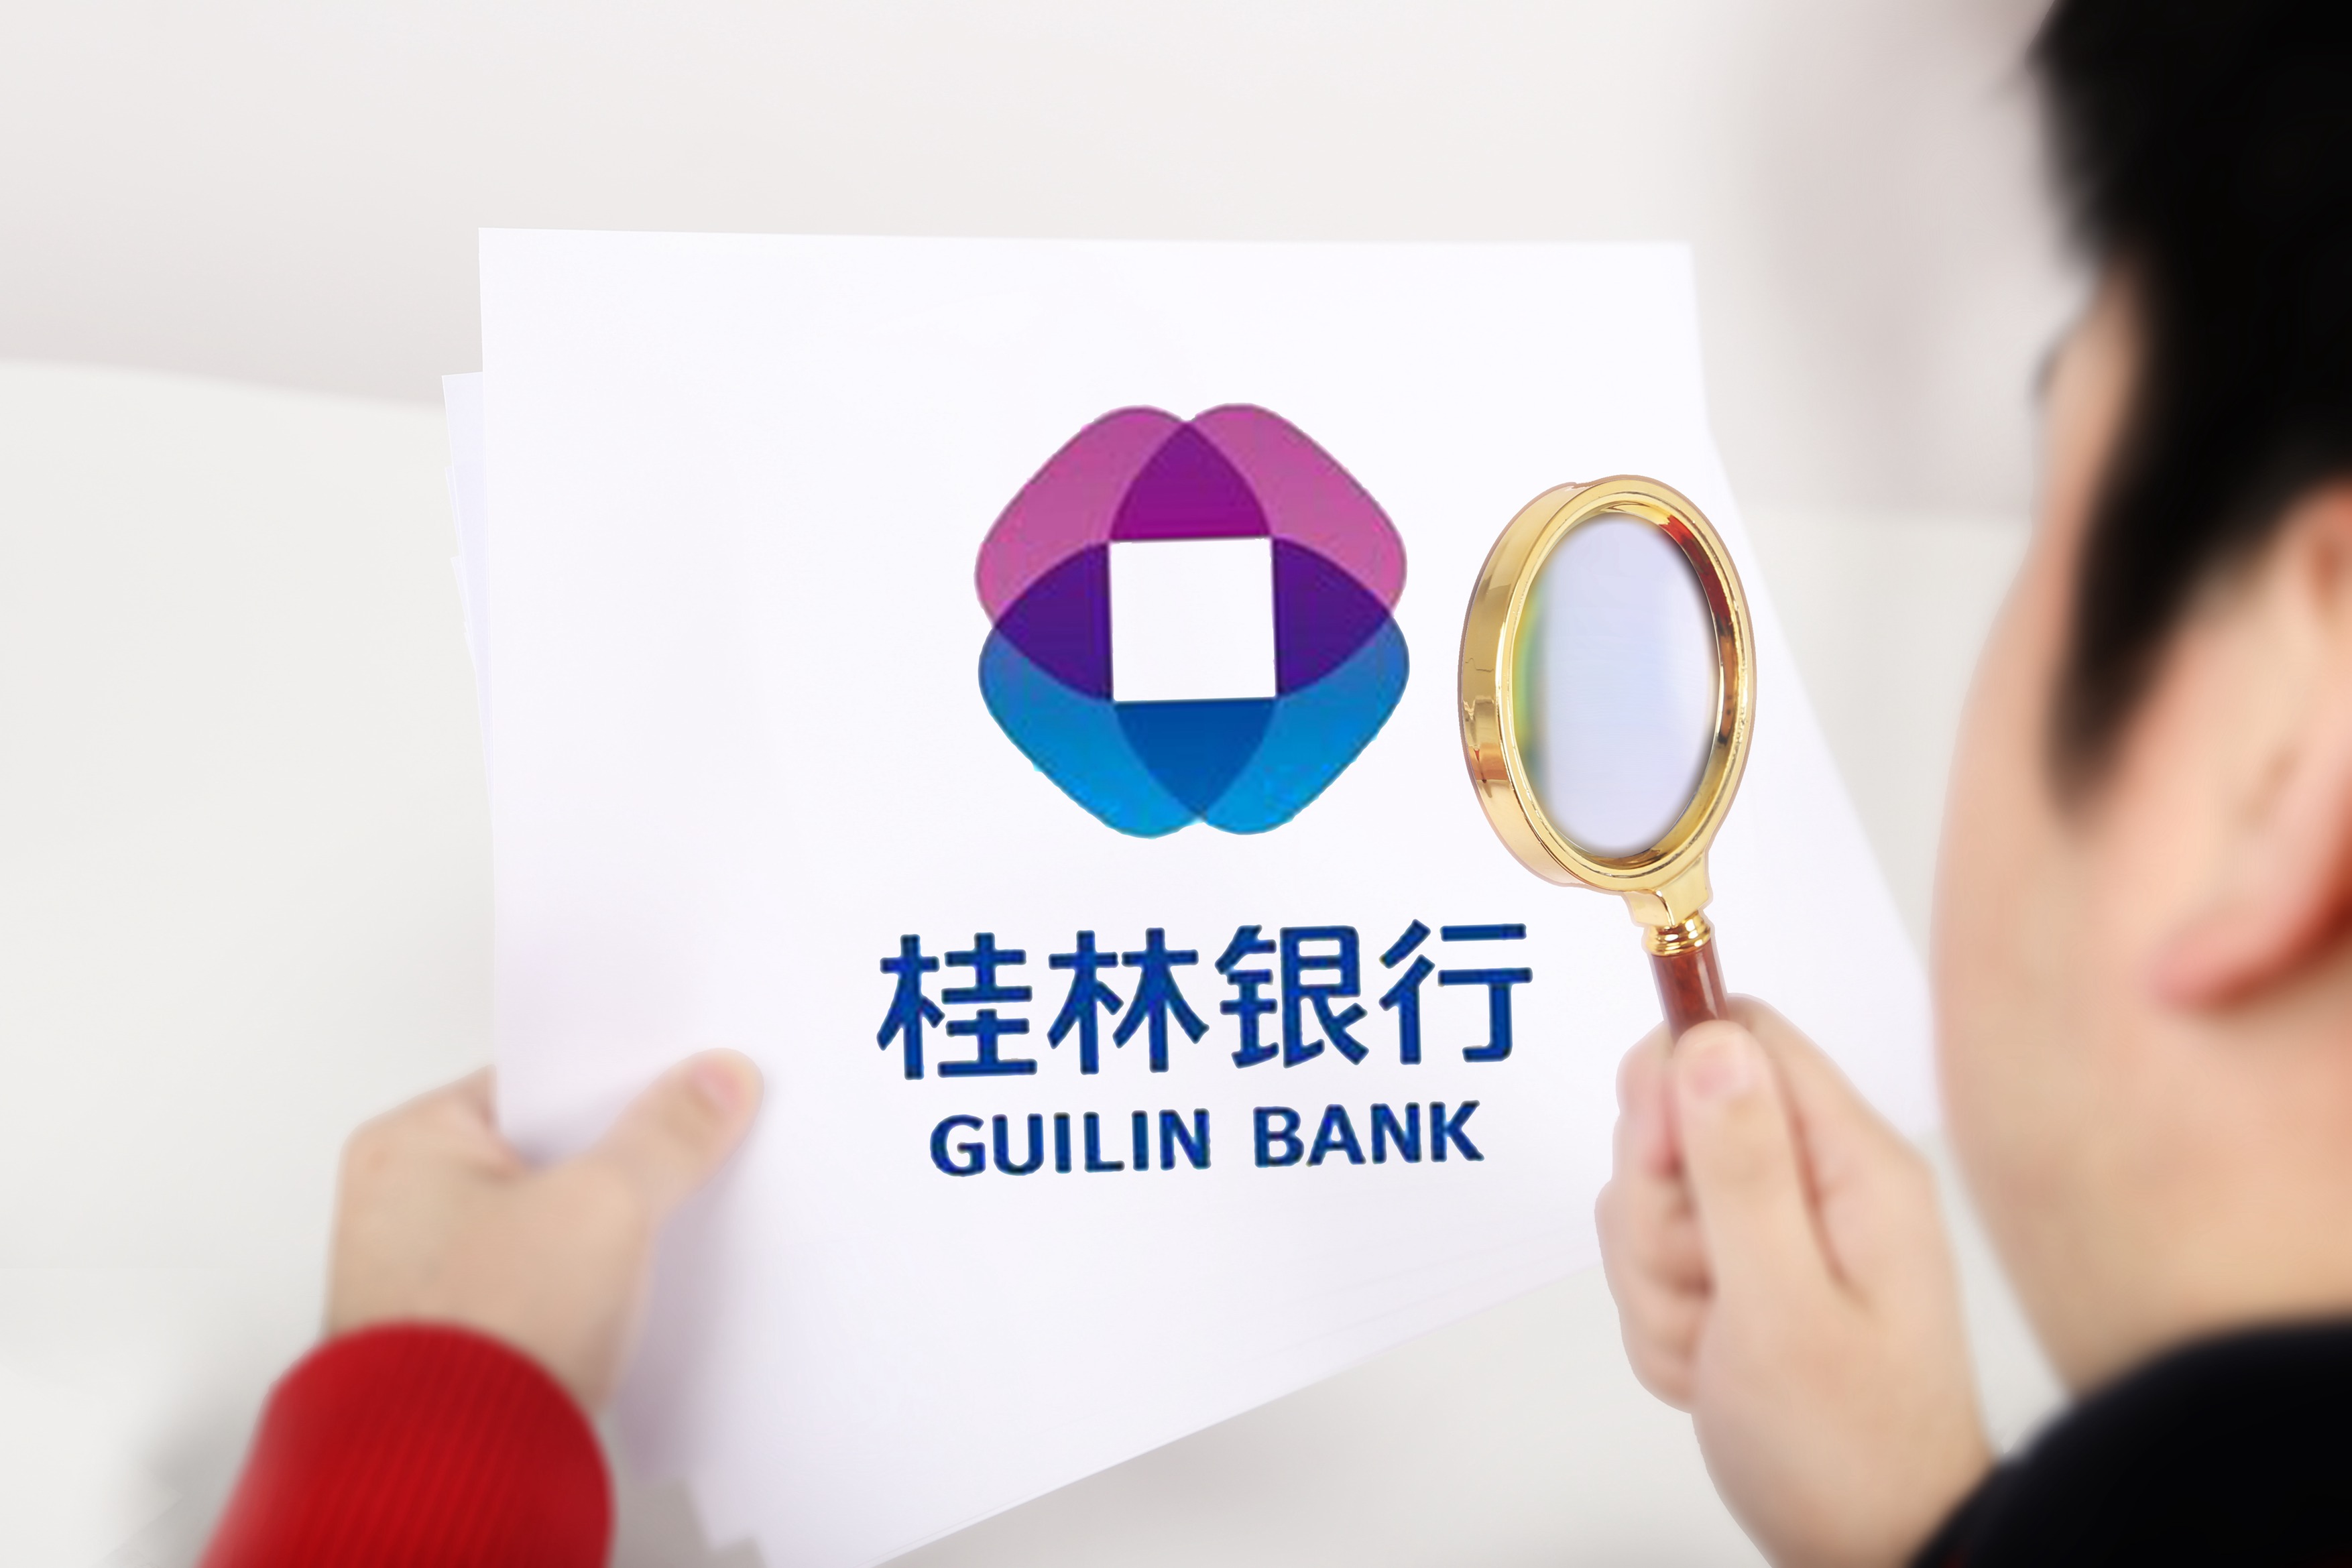 案例分享丨智能质检为桂林银行带来三大价值提升